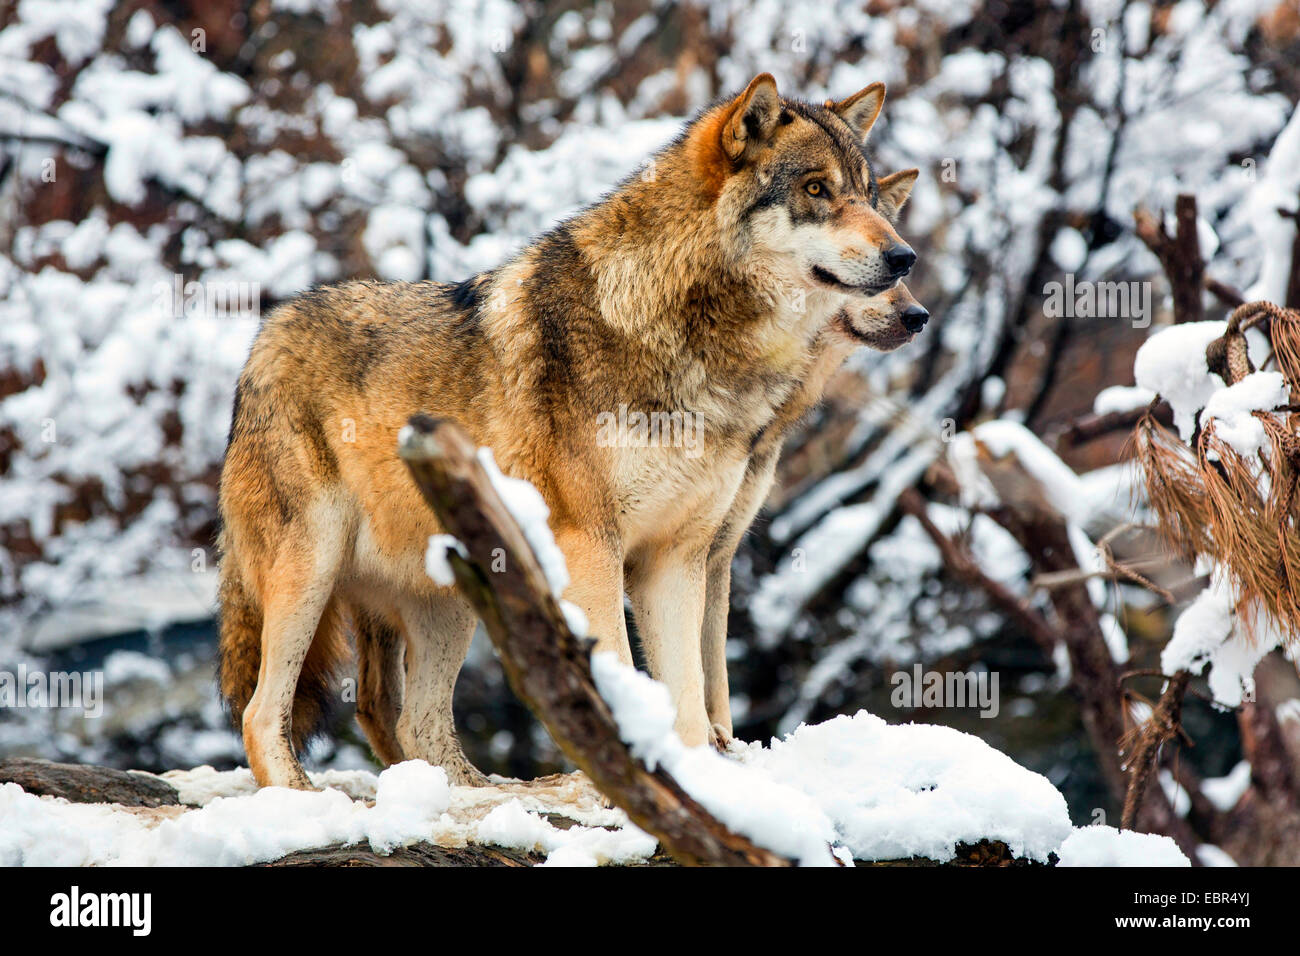 Unione lupo (Canis lupus lupus), due lupi che fissano, su rovesciato tronco di albero nel paesaggio innevato, Germania Foto Stock